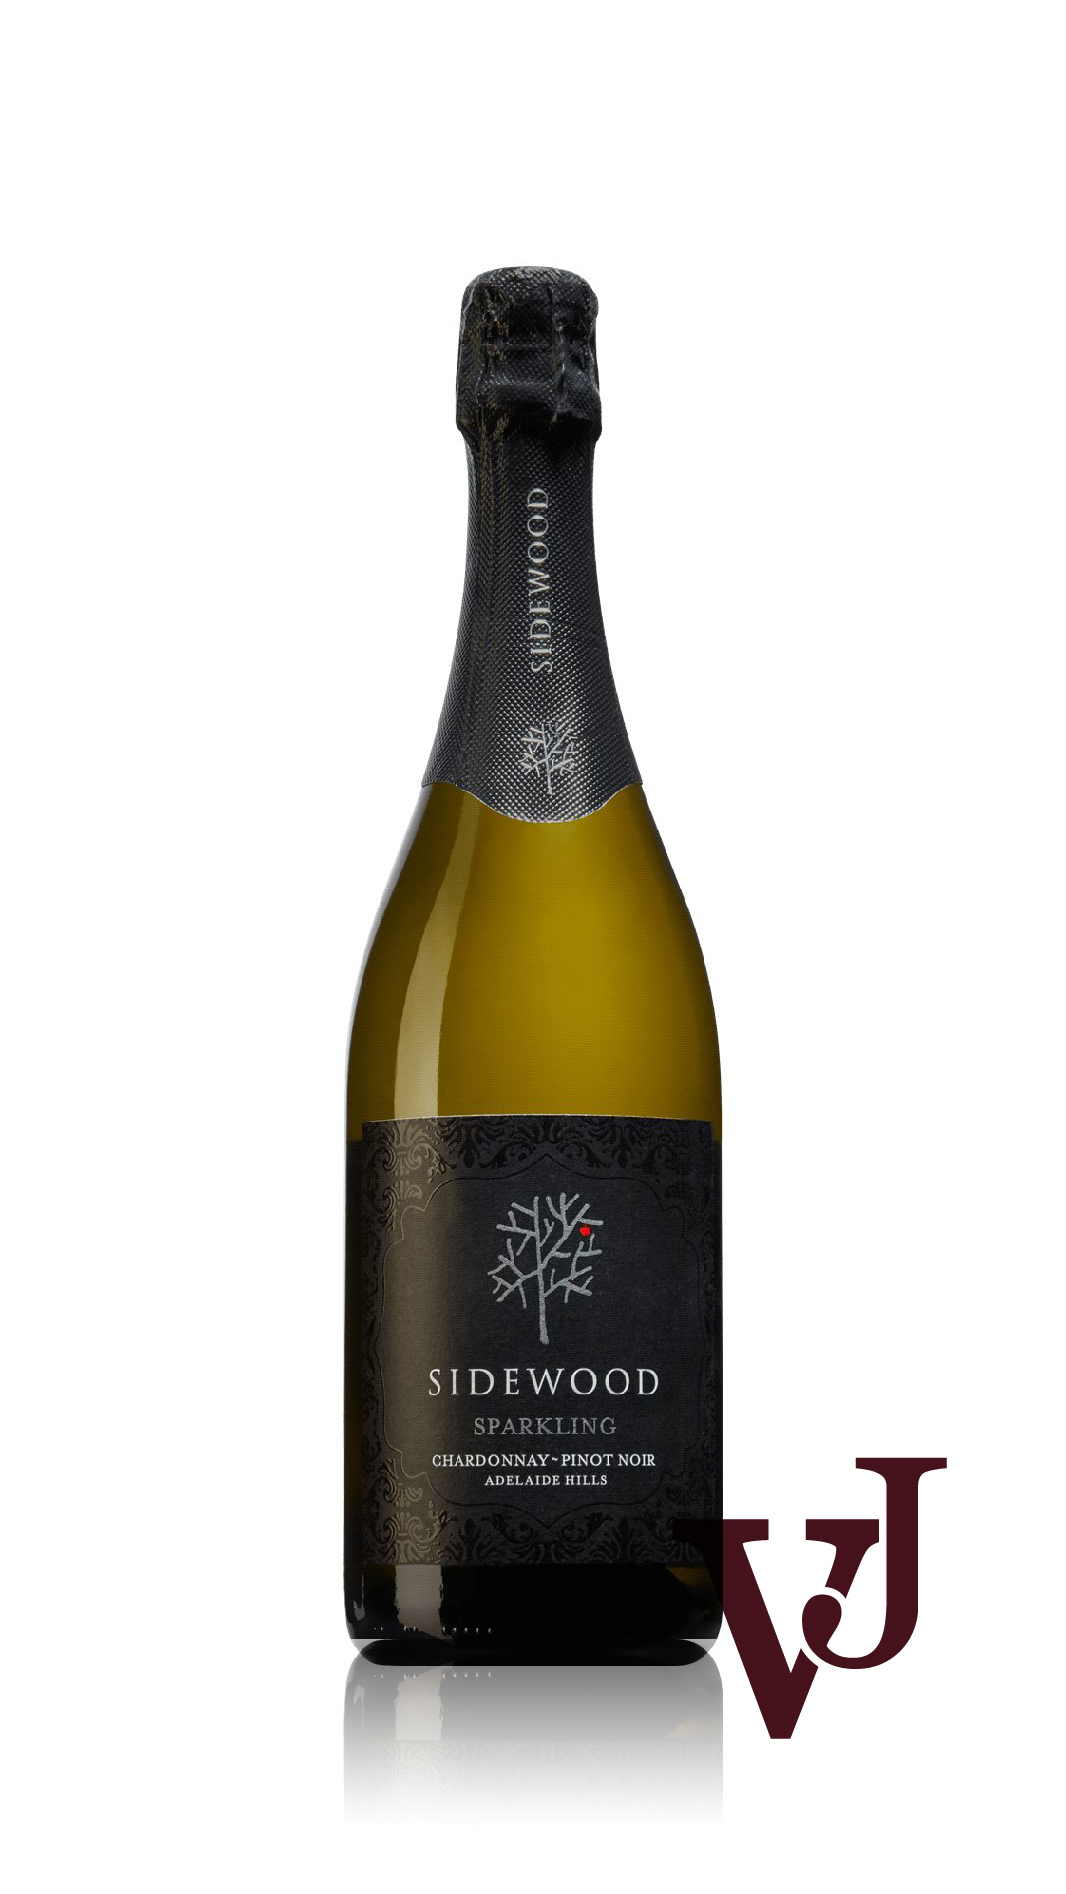 Mousserande Vin - Sidewood Sparkling artikel nummer 9044301 från producenten Sidewood Estate PTY LTD från området Australien